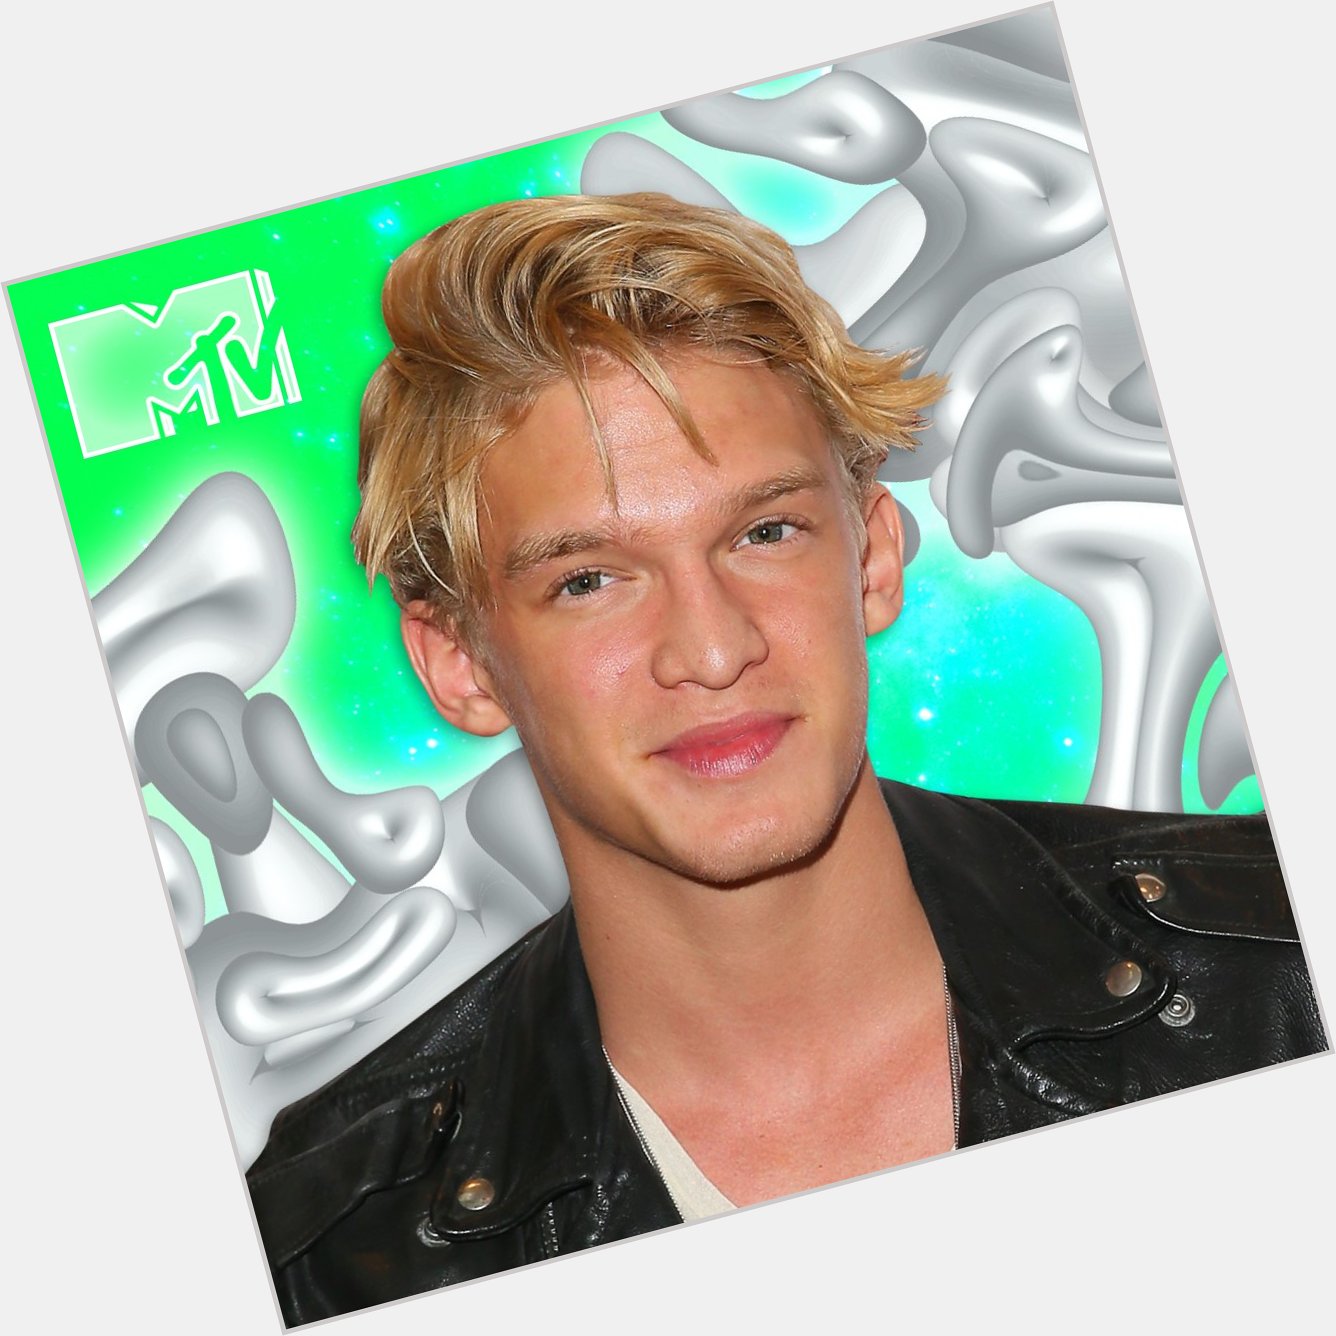   Festeggiamo i vent\anni di Cody Simpson  HAPPY BIRTHDAY! 